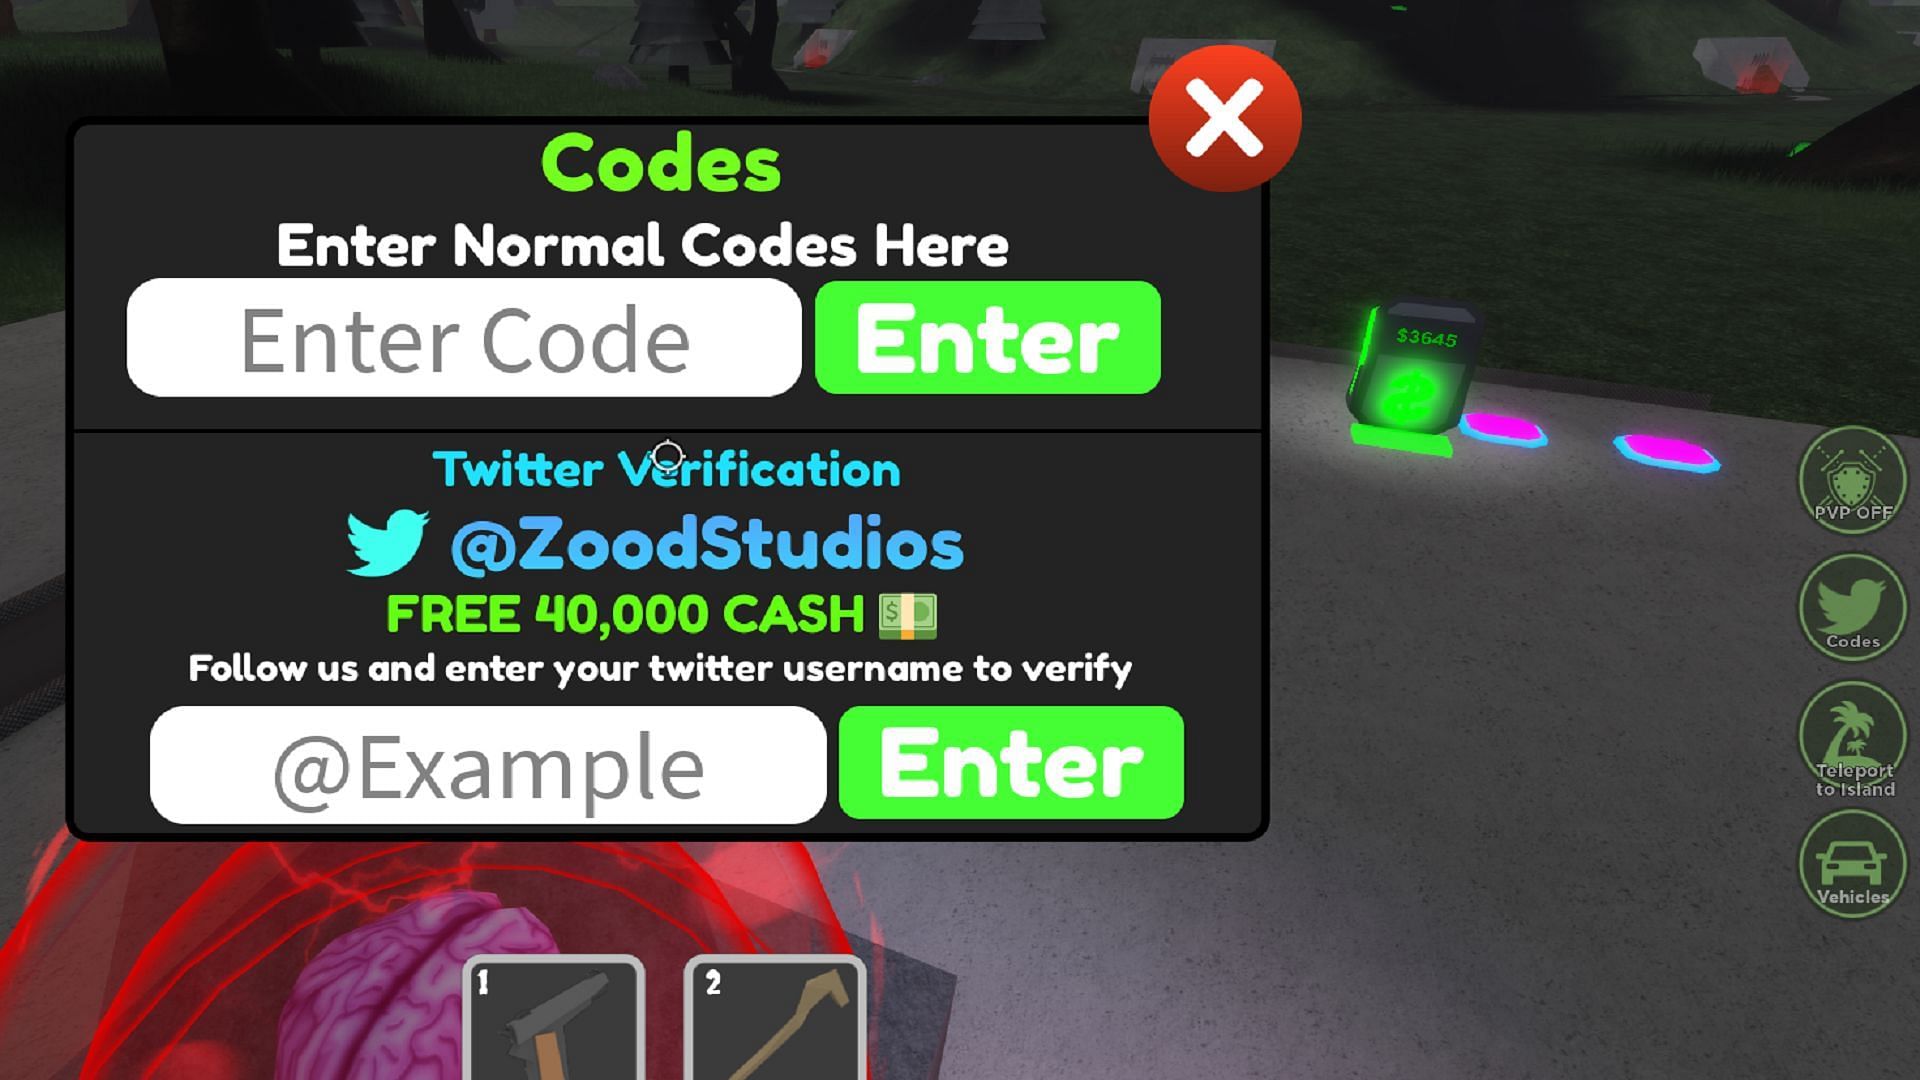 Redeem codes with the Codes menu (Image via Sportskeeda)